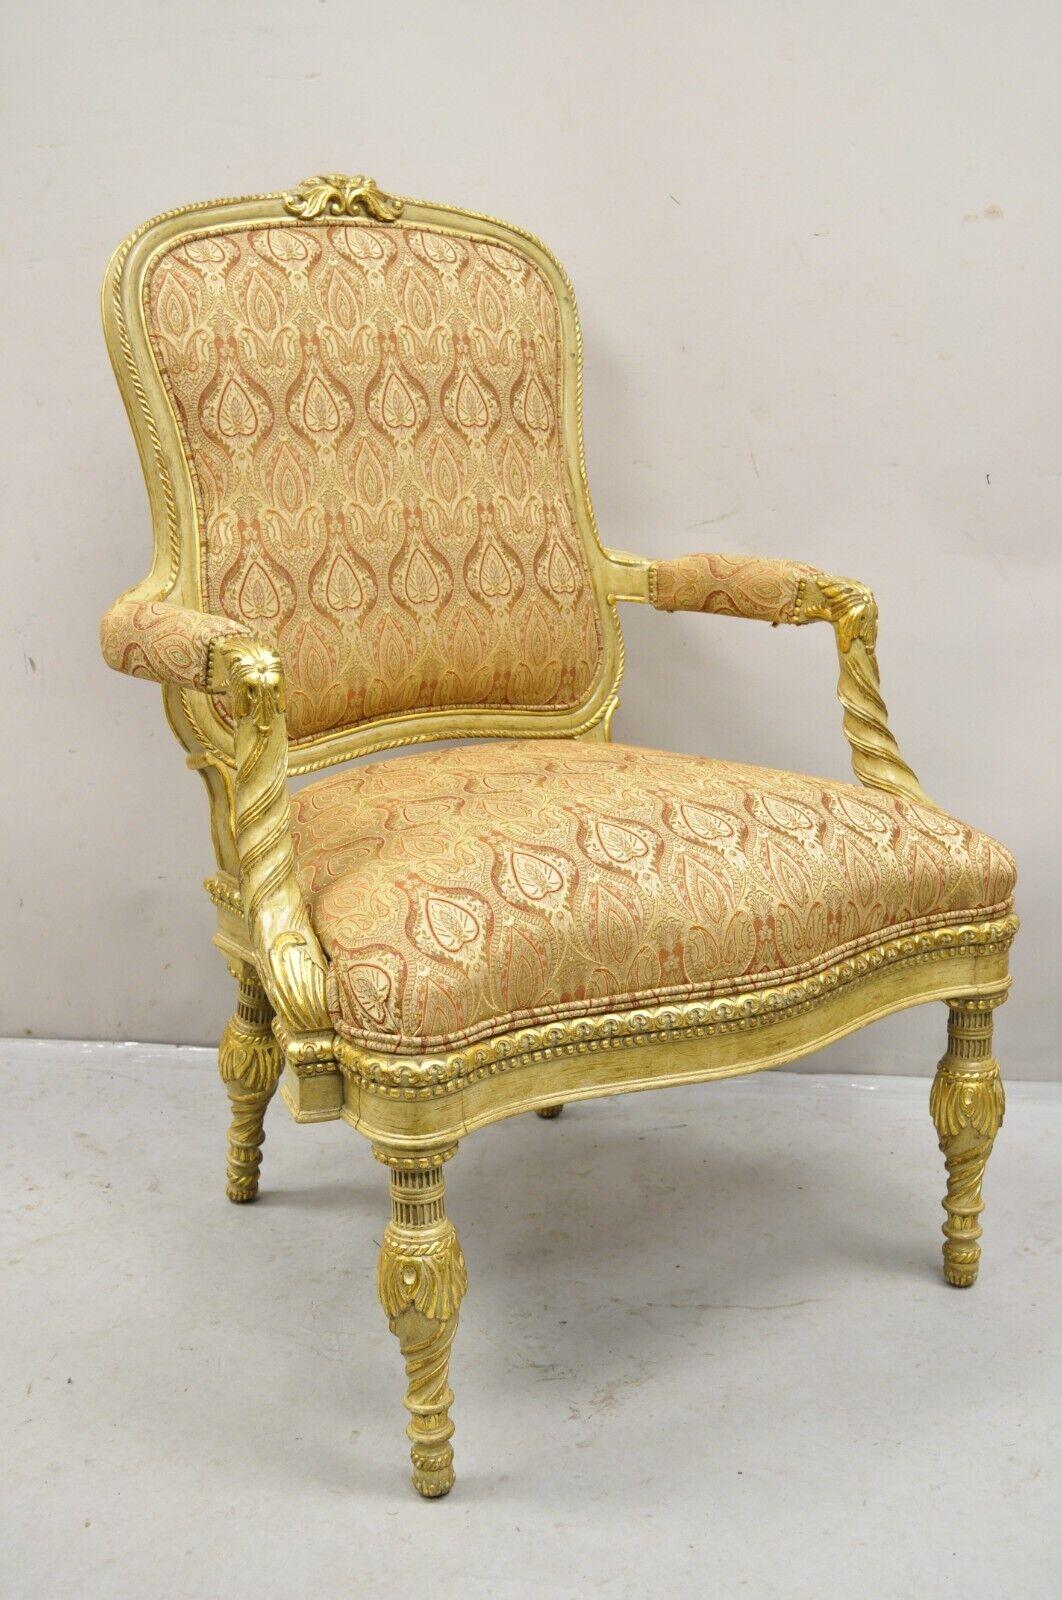 Oscar de la Renta Home by Century Furniture Italienischer Neoklassischer Stil Gold Vergoldet Creme Gemalt Sessel. CIRCA Spätes 20. Jahrhundert
Abmessungen: 44